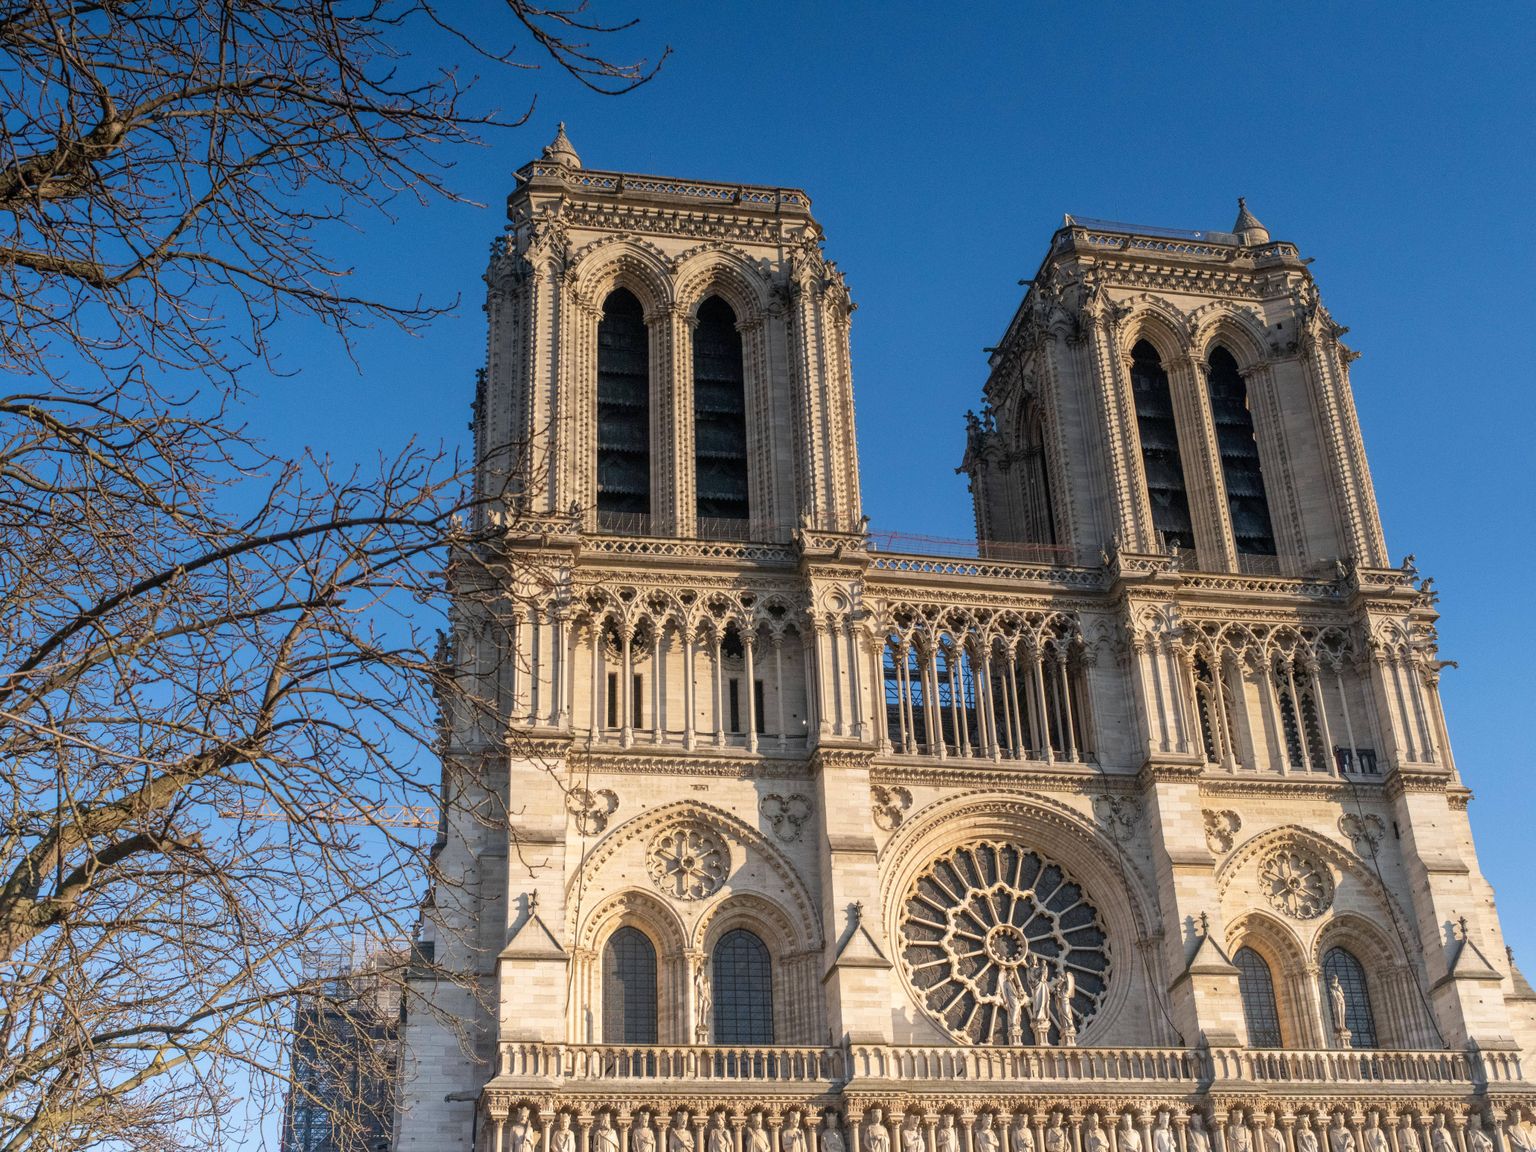 Pariisi kuulsas keskaegses Jumalaema kirikus lahvatas 15. aprillil 2019 tulekahju, mis hävitas pikihoone tammepuust ja pliist katuse ning kahjustas kiriku siseosa. Kaks torni jäid siiski püsti. Alates sellest on kirikut uuritud ja seda ehitatakse taas üles